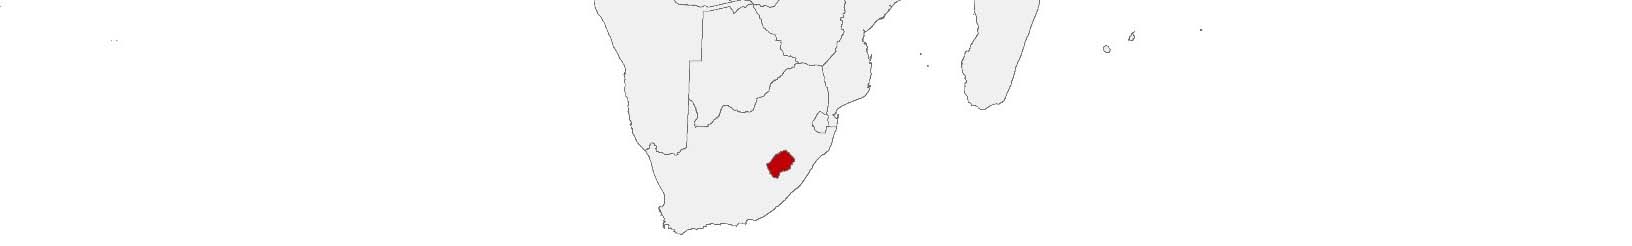 Kaufkraftdaten und soziodemographische Daten können auf einer Karte von Lesotho mithilfe der Gebietsgrenzen Districts dargestellt werden.